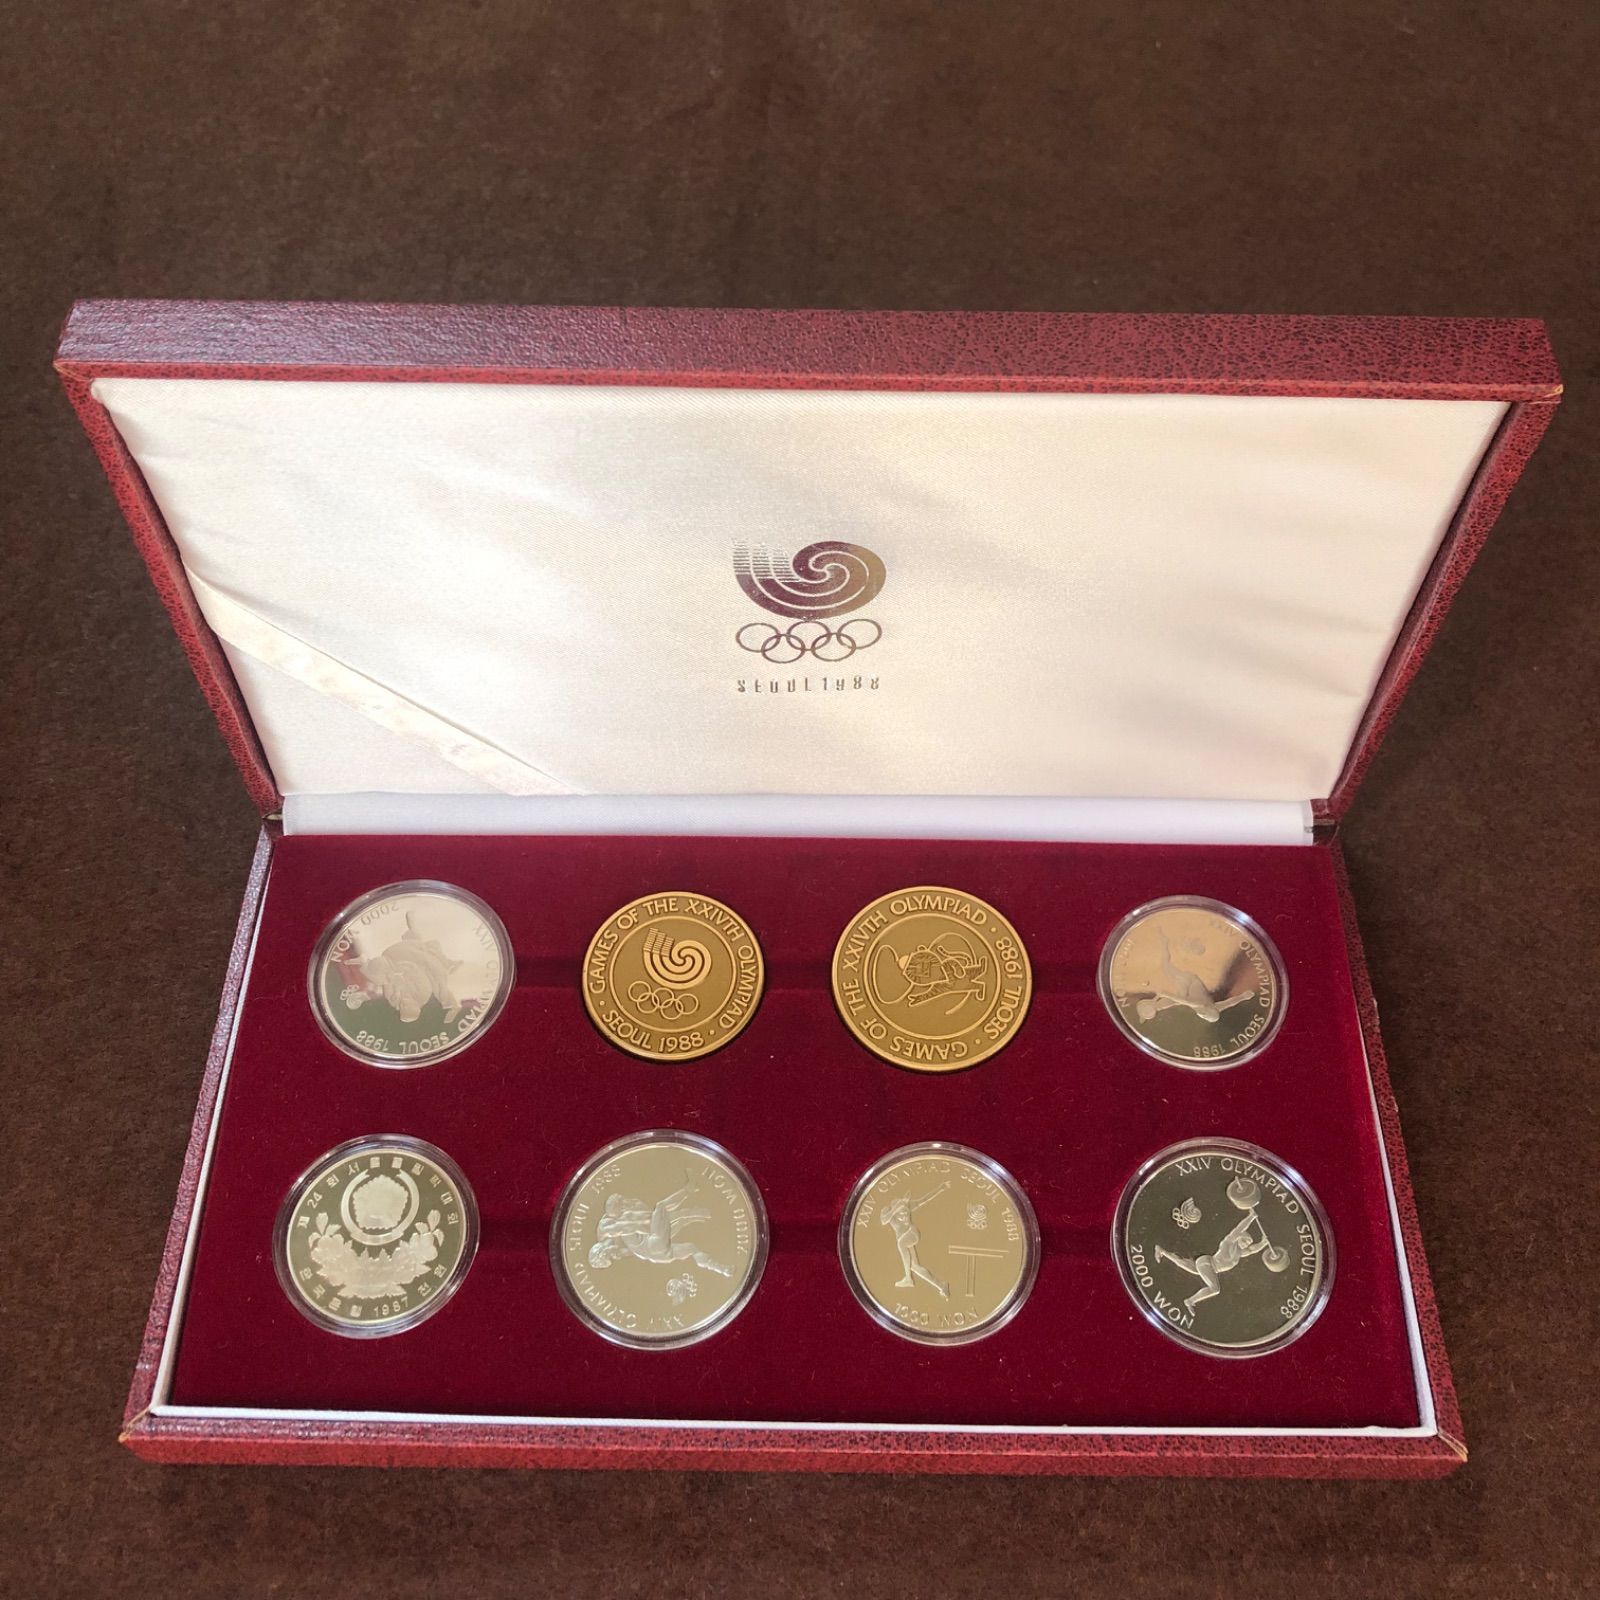 ソウル オリンピック 1988 記念硬貨セット - コレクション